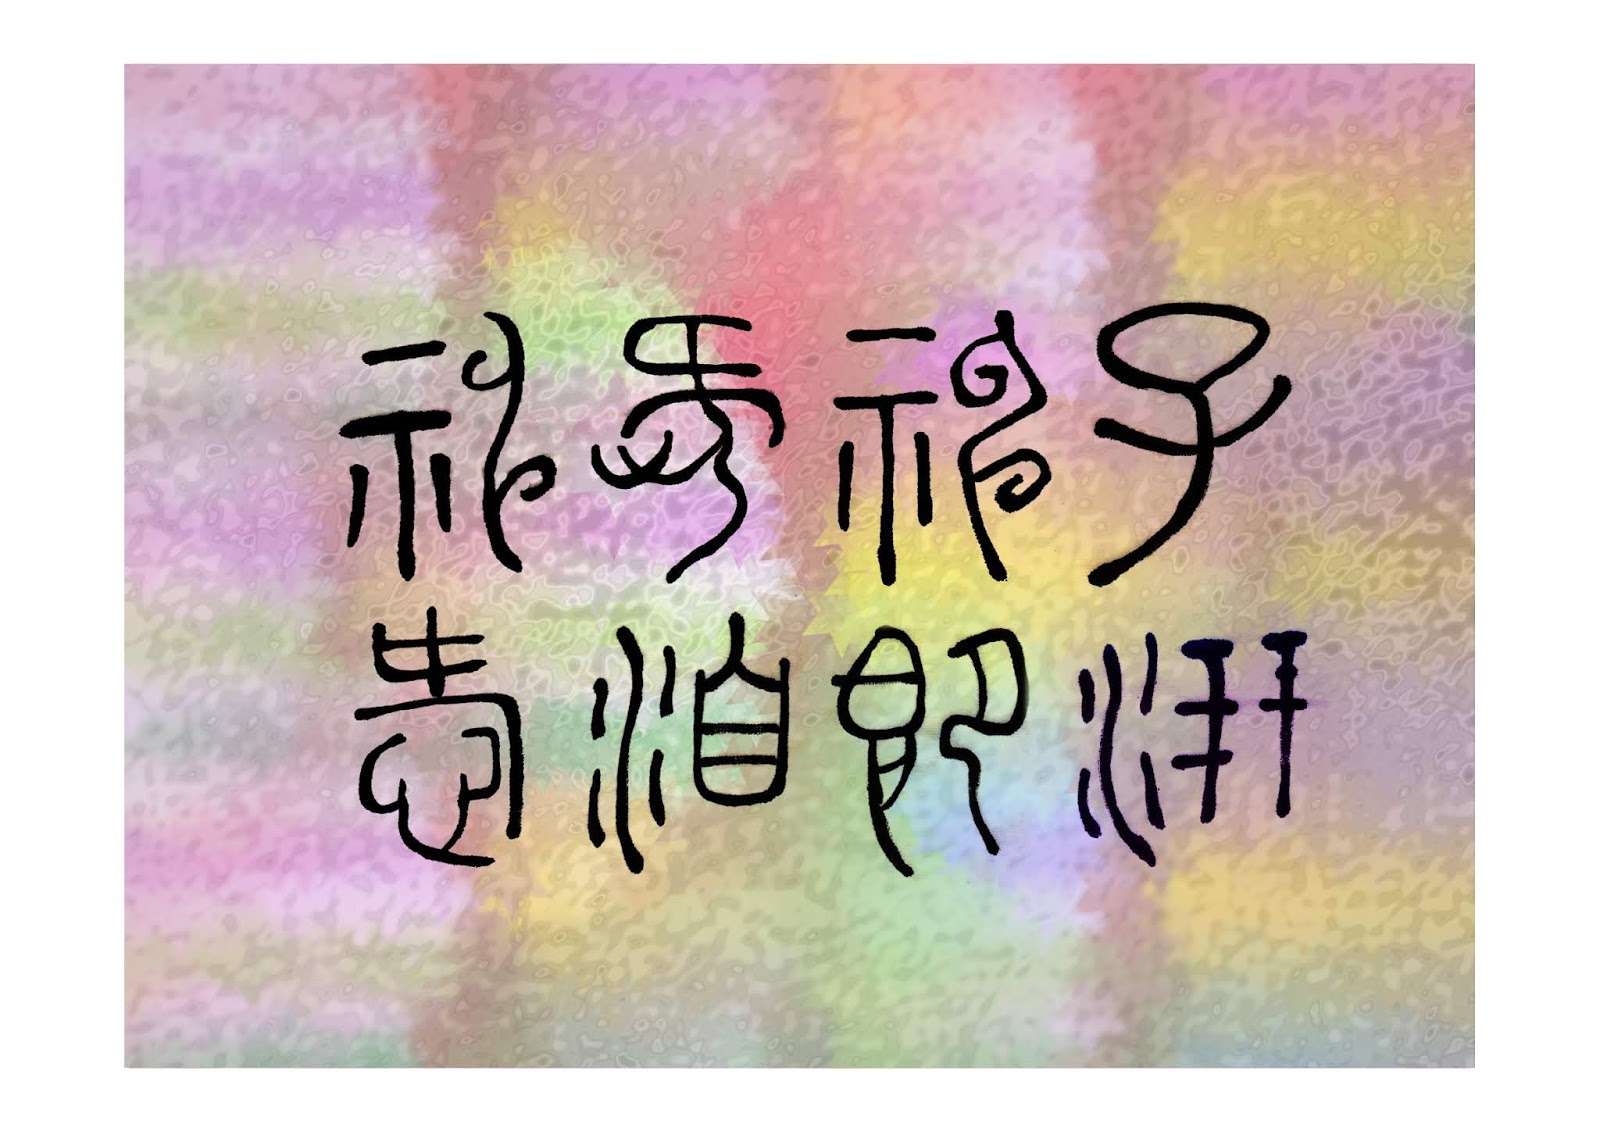 關偉昌 Paul Kwan 的圖文空間 漢字與中國藝術